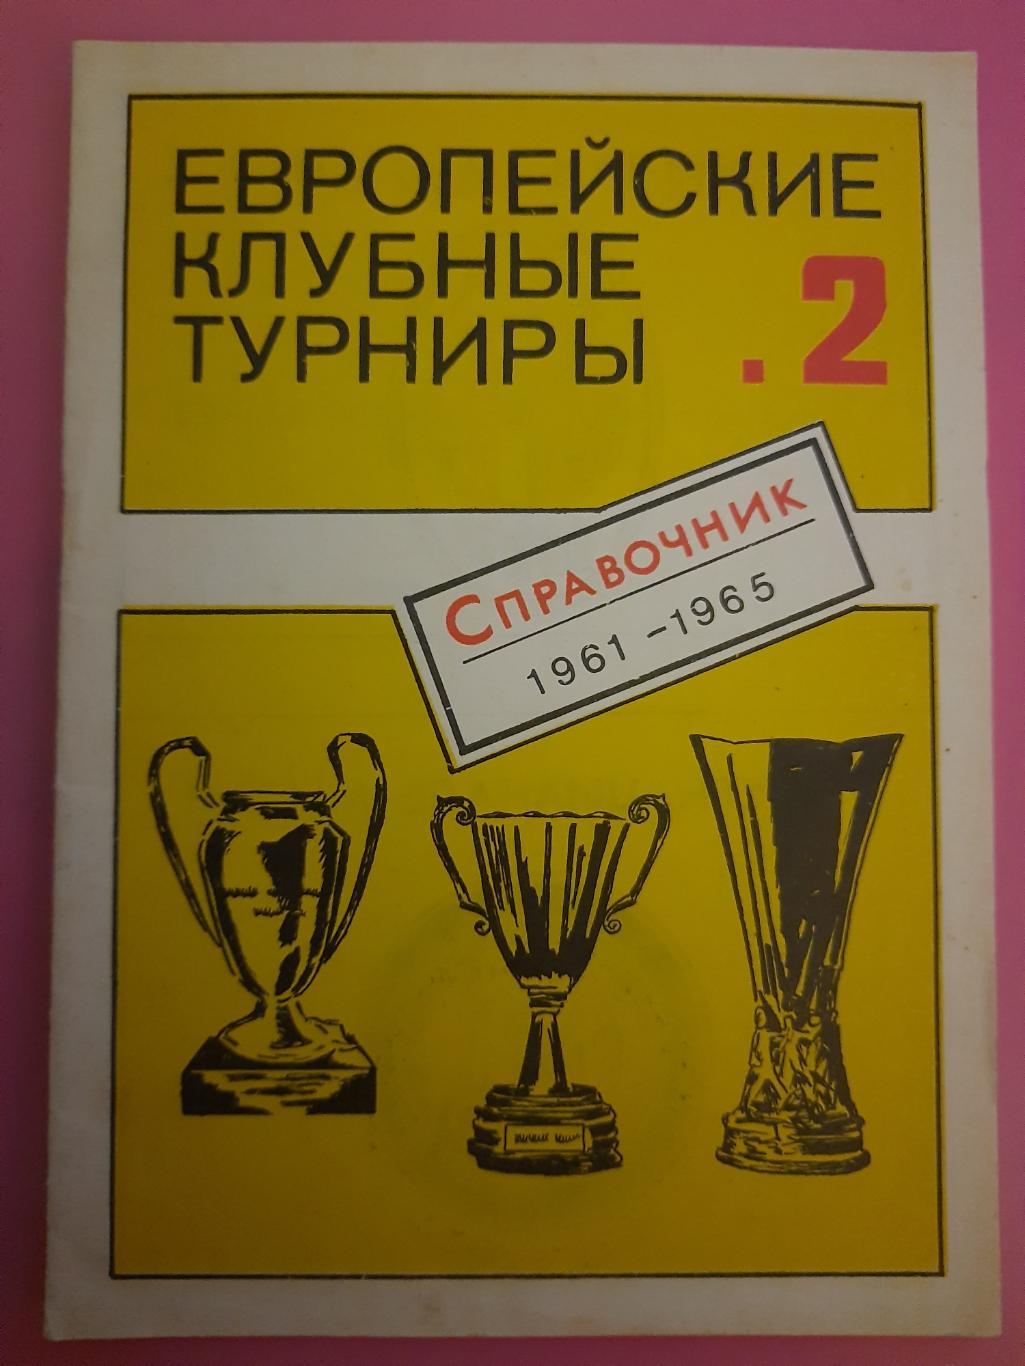 справочник футбол, Европейские клуные турниры #2 (1961-1965)